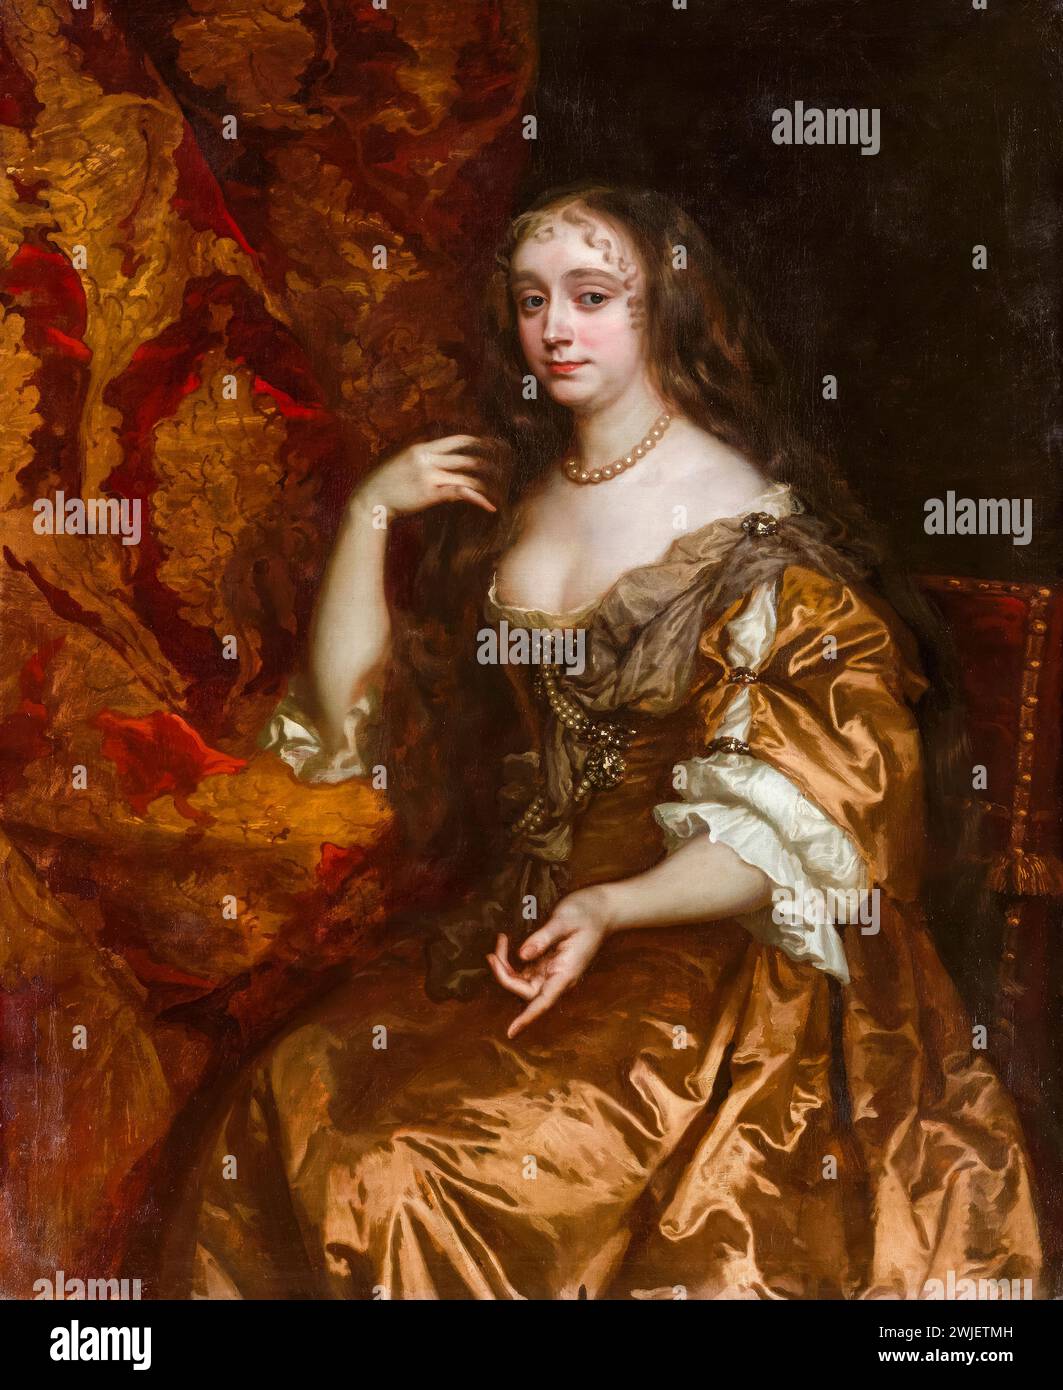 Anne Hyde (1637-1671), duchessa di York. Prima moglie di re Giacomo II e VII, ritratto a olio su tela di Sir Peter Lely, intorno al 1662 Foto Stock